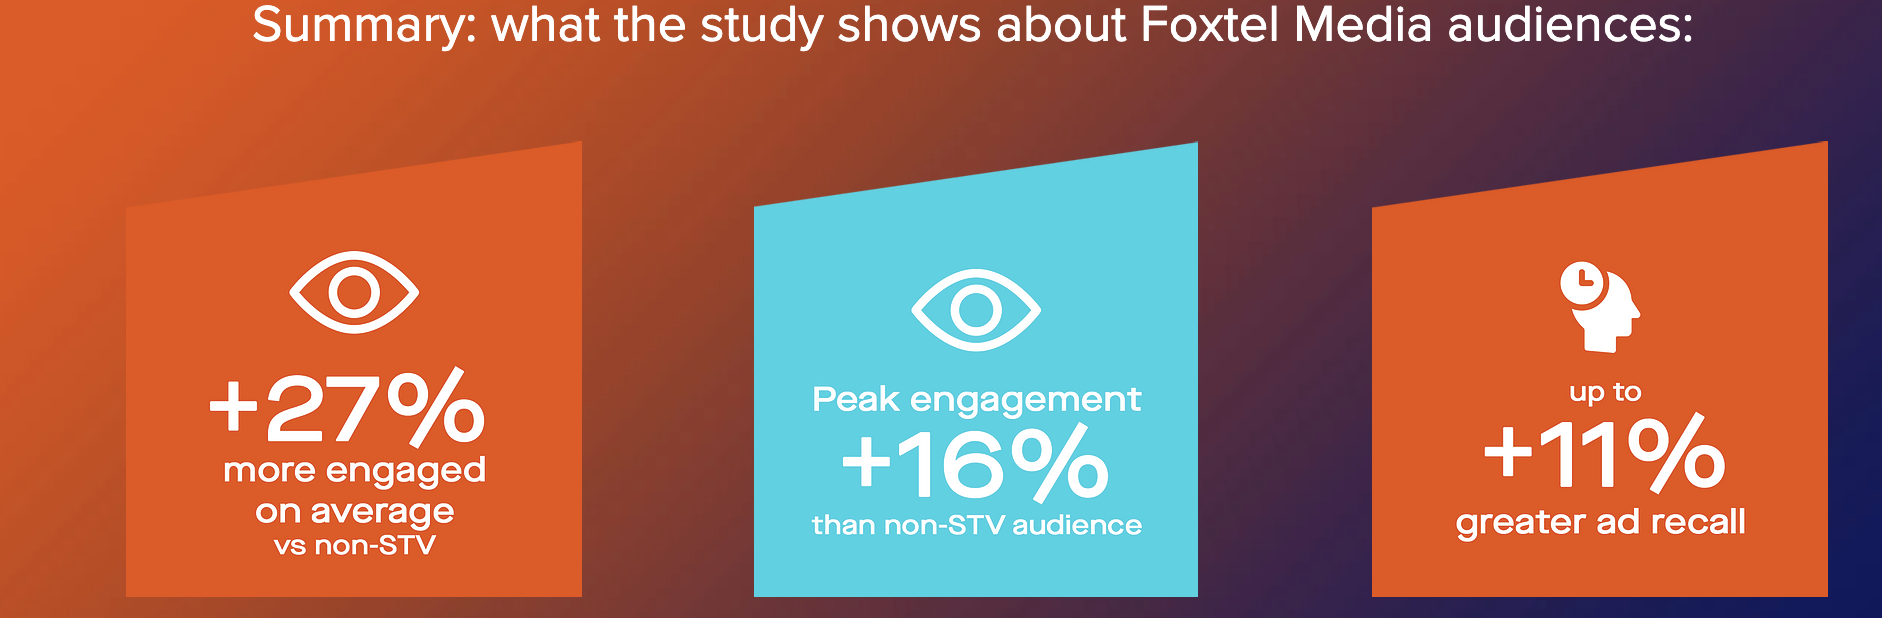 Foxtel：视频订阅观众的广告参与度比非订户高27%